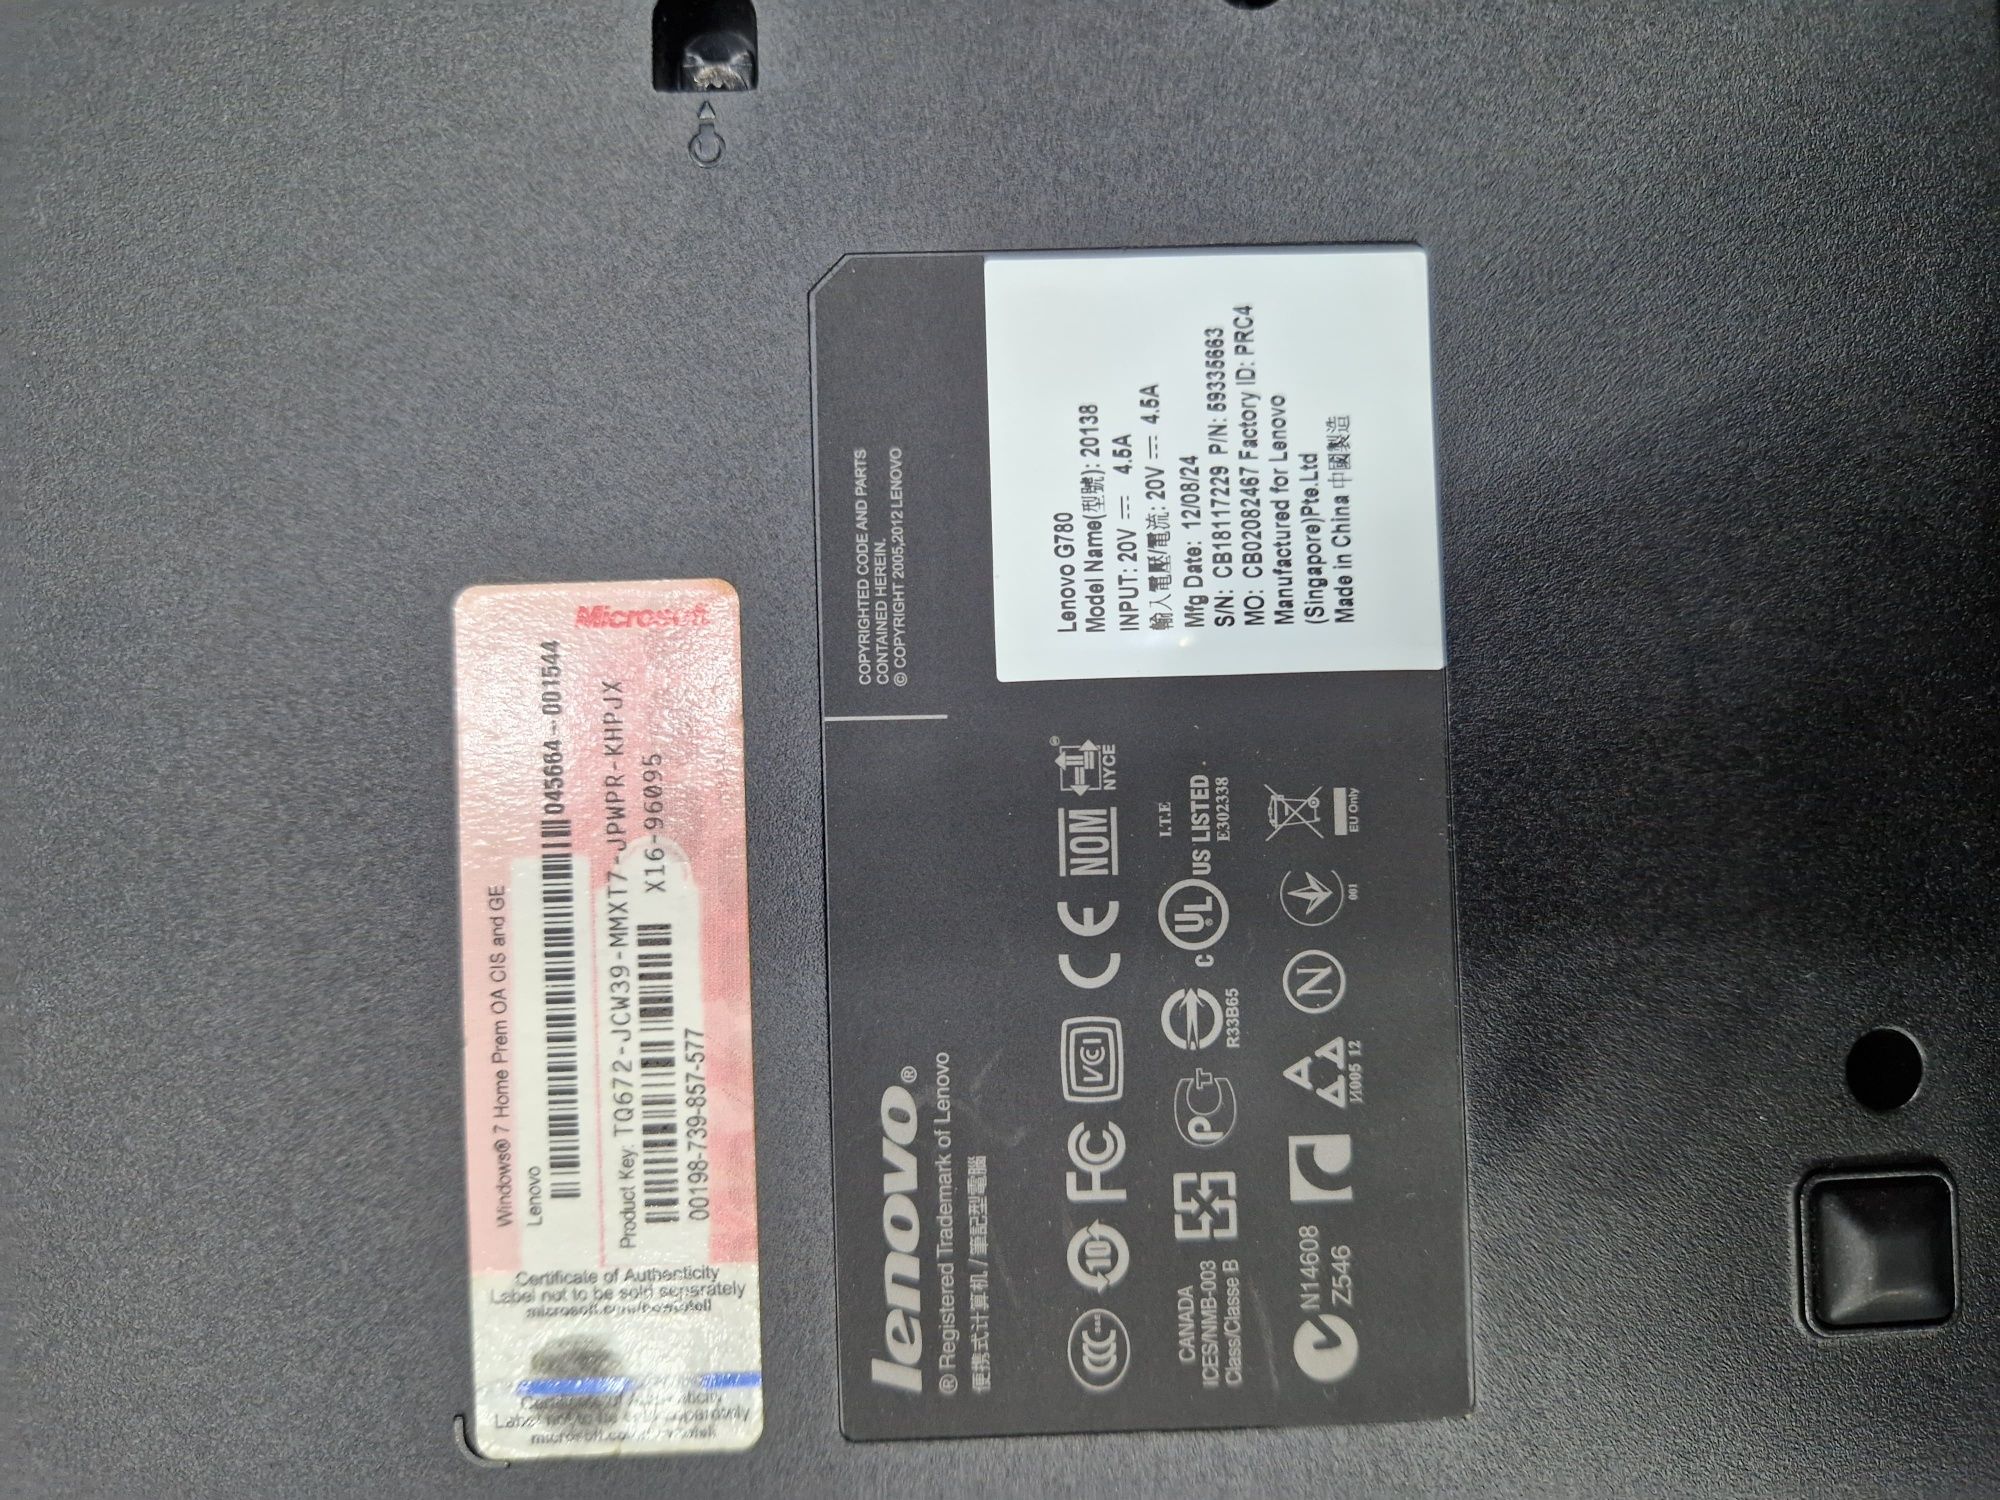 Продам ноутбук Lenovo G780